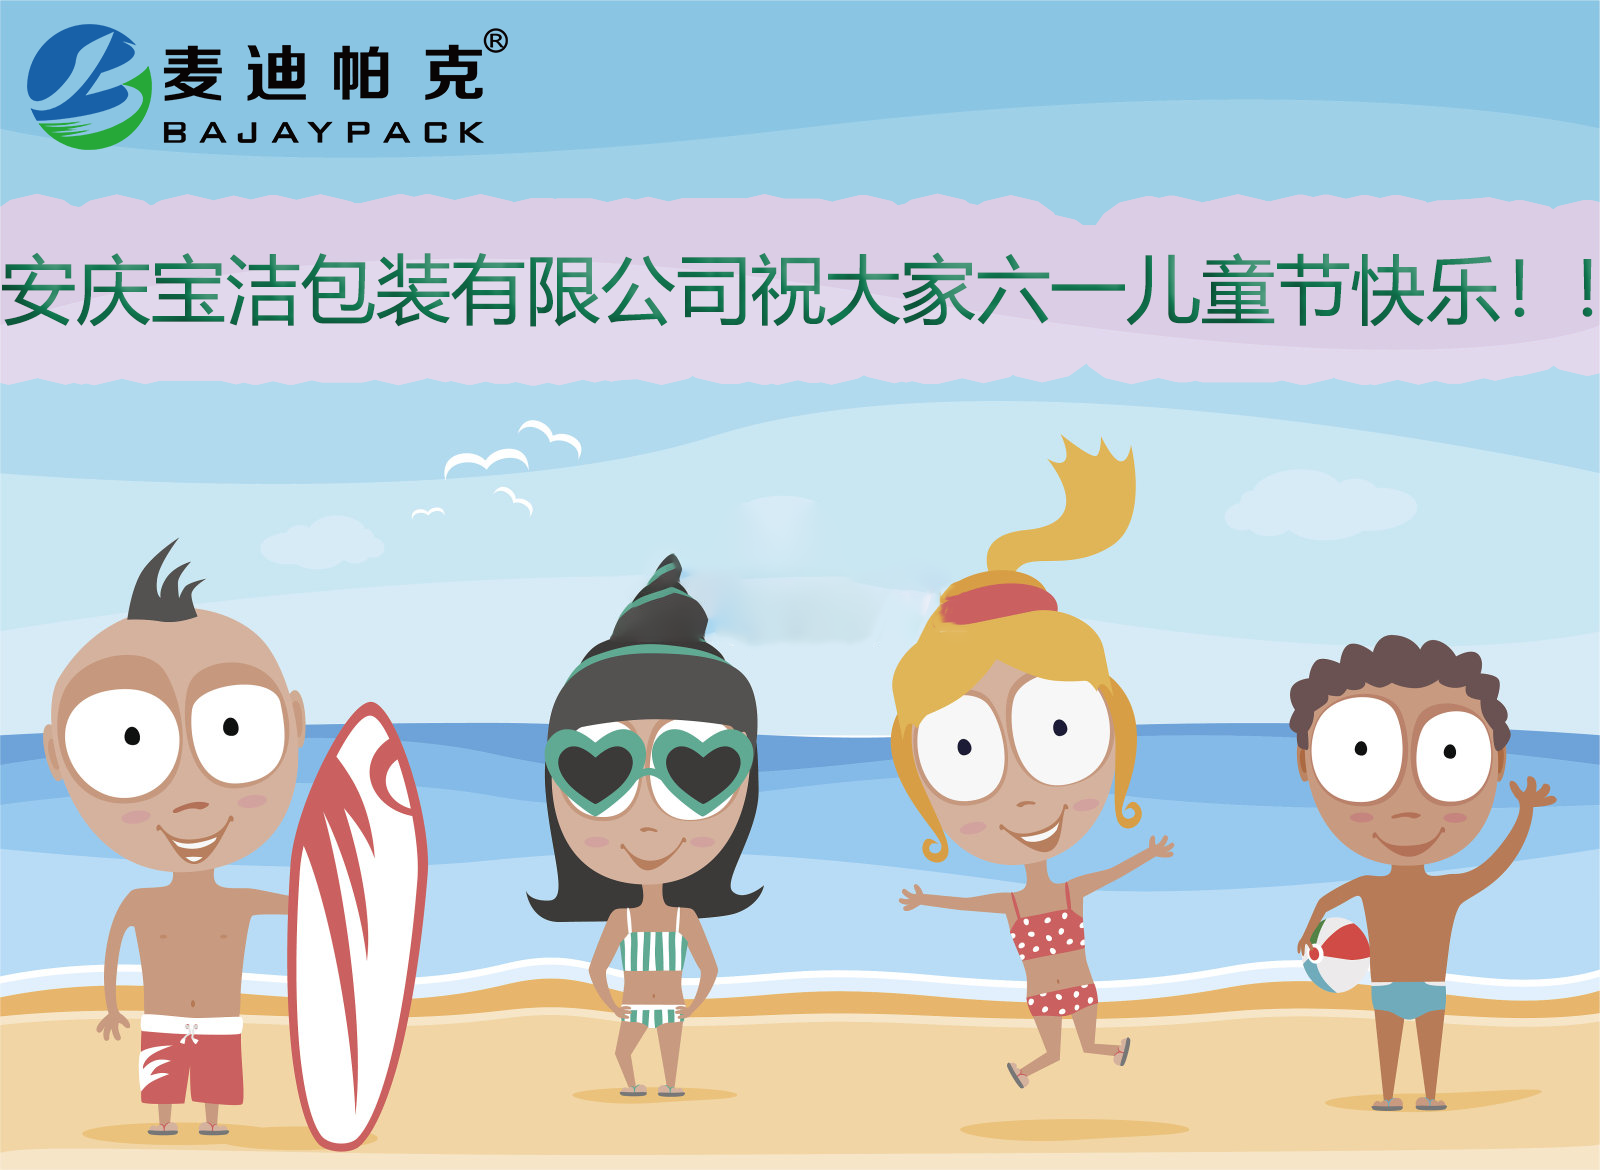 安慶市寶潔包裝有限公司祝大家國際六一兒童節快樂?。?！